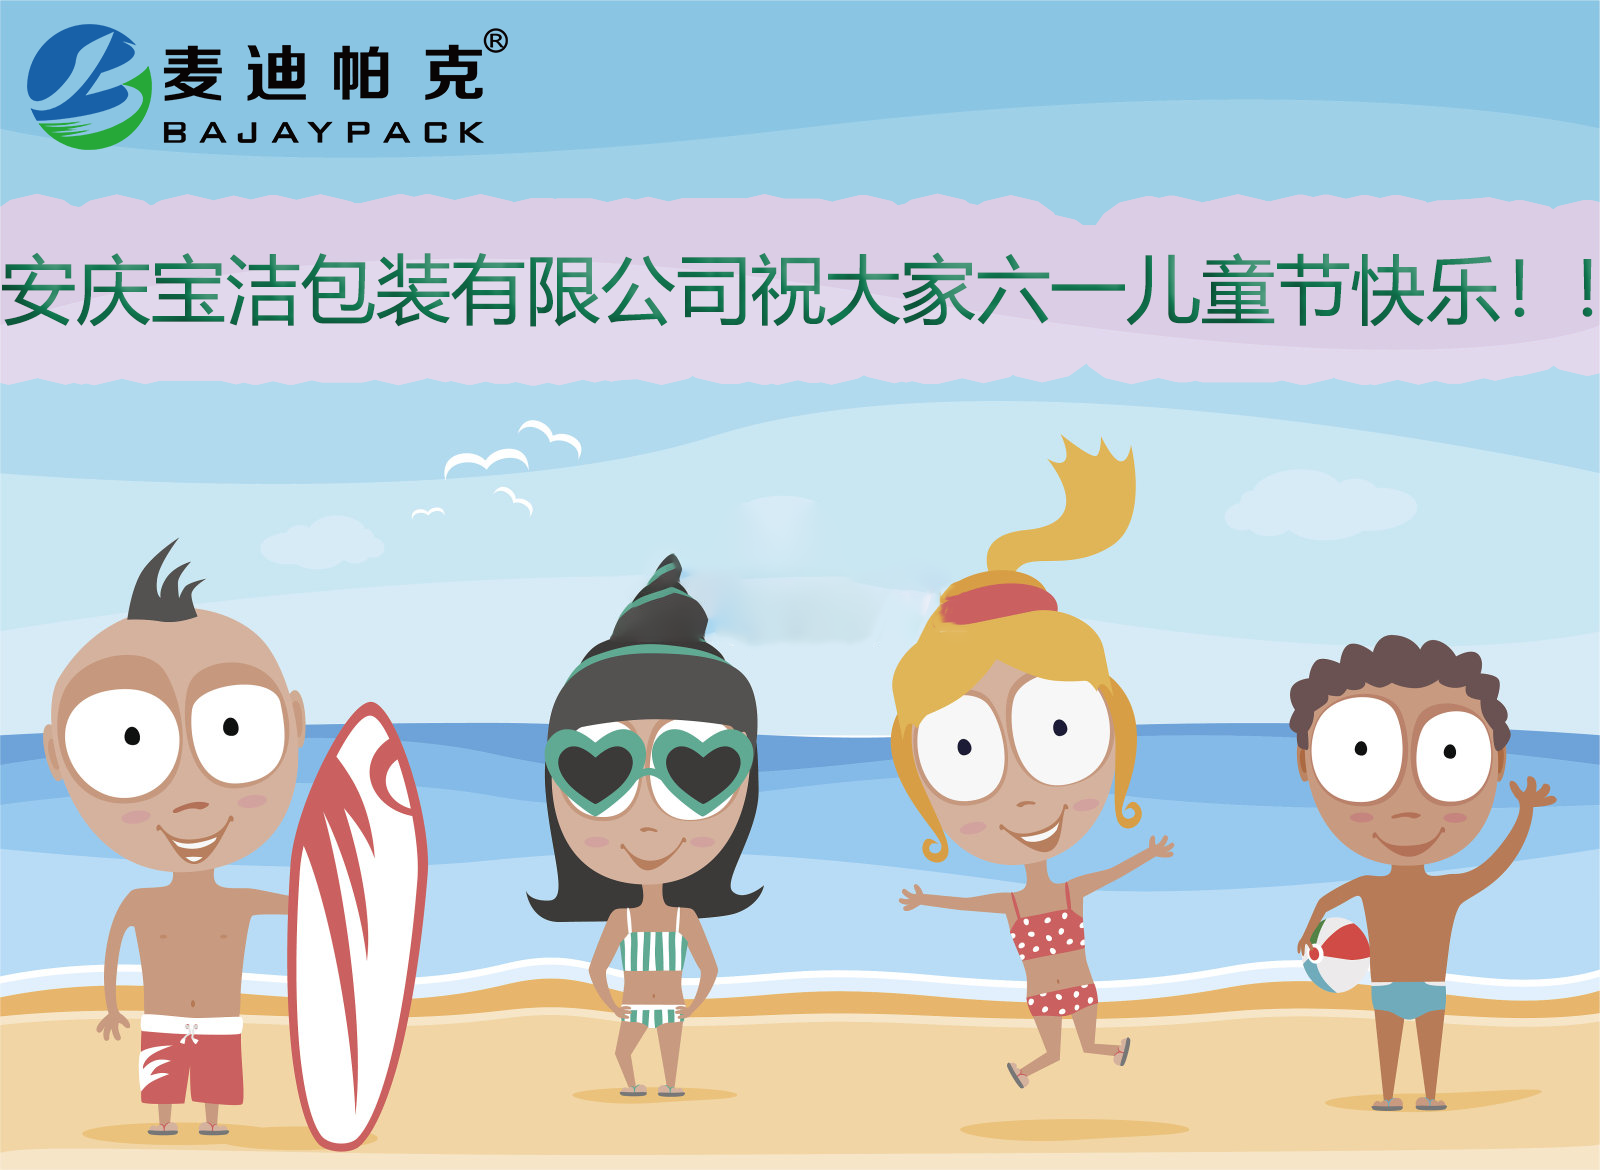 安慶市寶潔包裝有限公司祝大家國際六一兒童節快樂?。?！